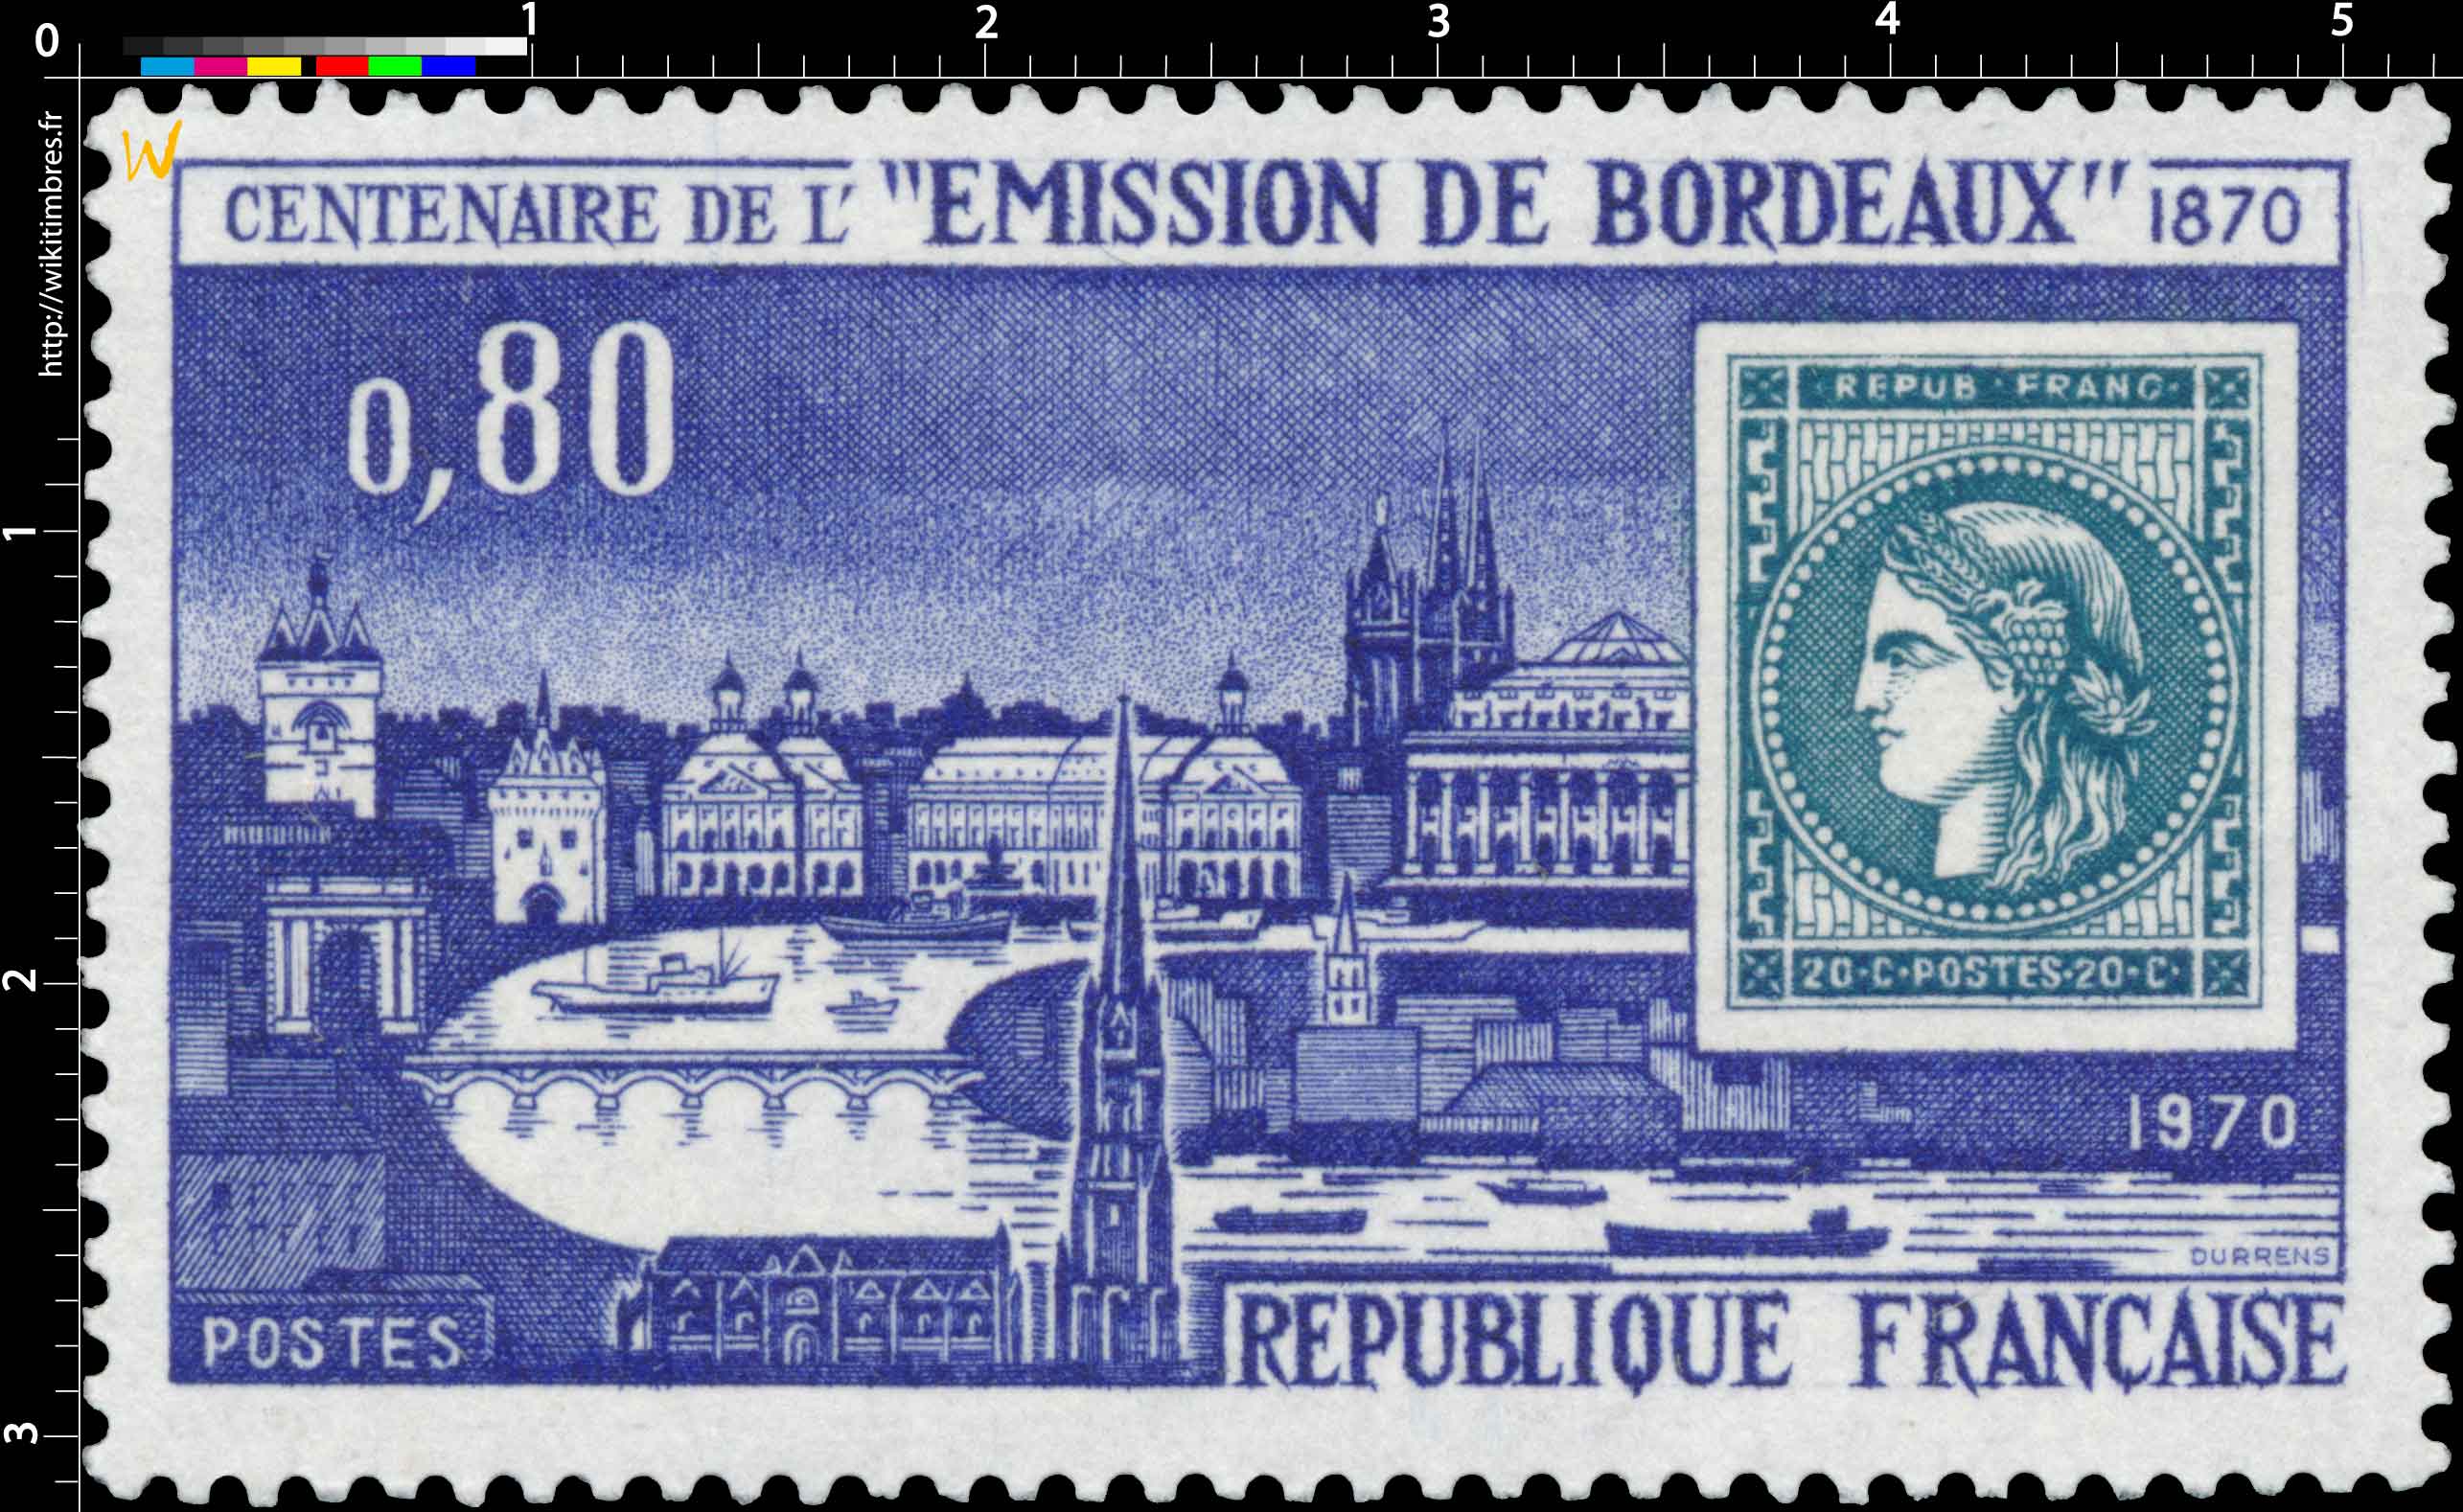 1970 CENTENAIRE DE L' ÉMISSION DE BORDEAUX 1870